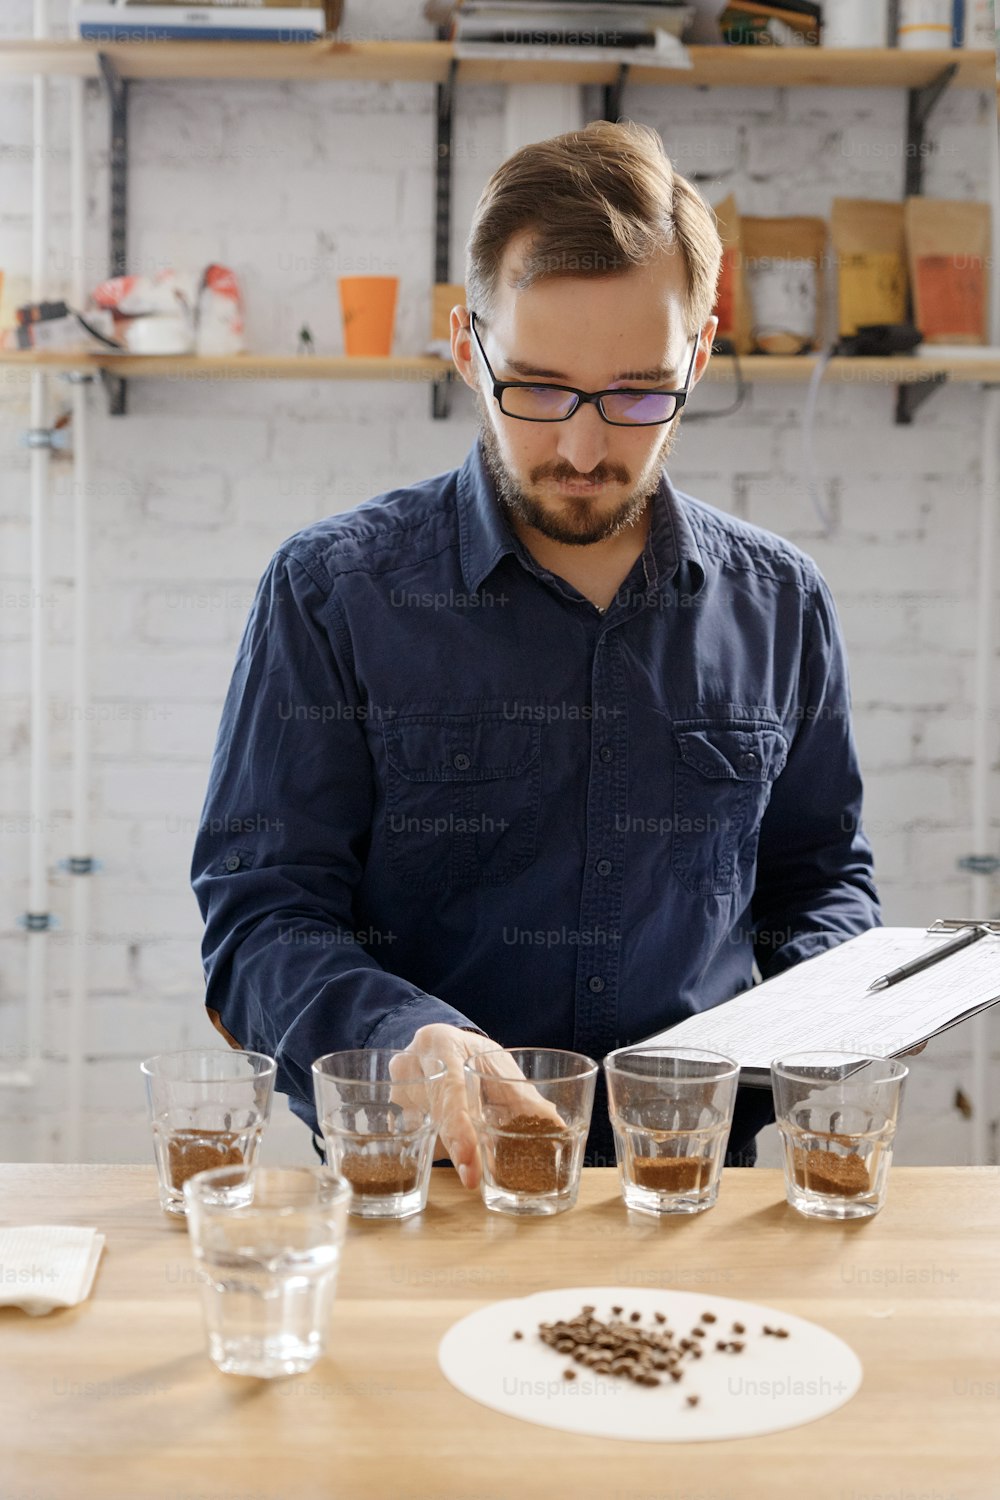 Retrato de hombre oliendo café molido en tazas en el examen de catación de café. Está parado cerca de una pared blanca frente a filas con vasos de vidrio